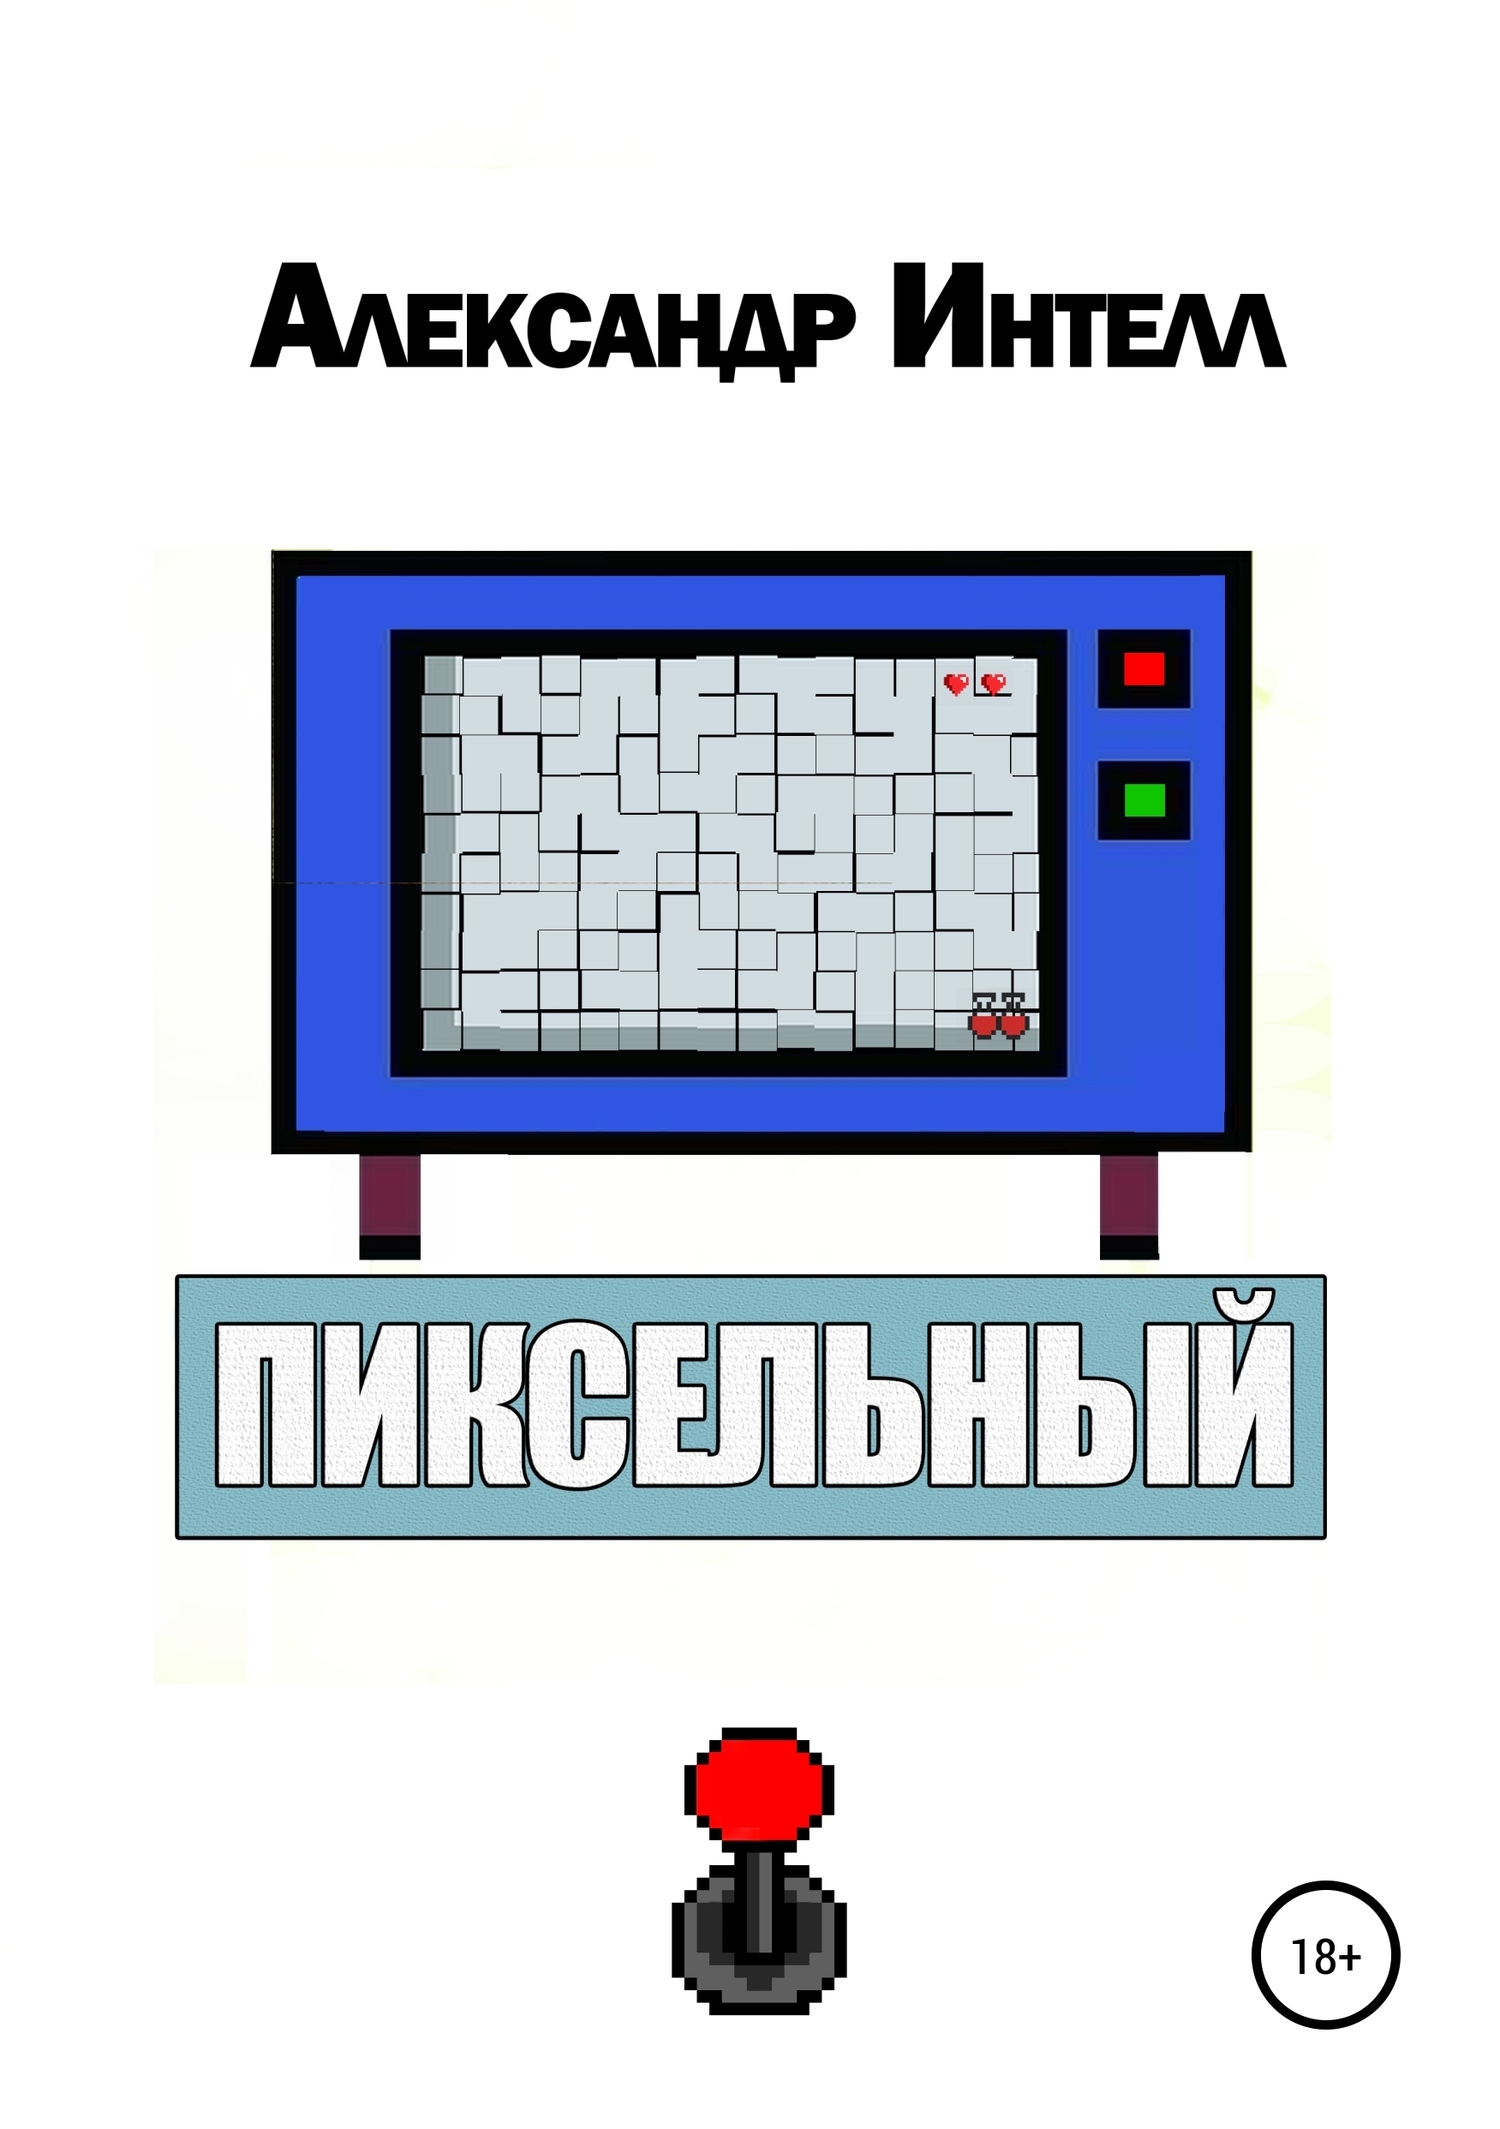 Книга  Пиксельный созданная Александр Александрович Интелл может относится к жанру интернет, попаданцы, современная русская литература. Стоимость электронной книги Пиксельный с идентификатором 22455021 составляет  руб.